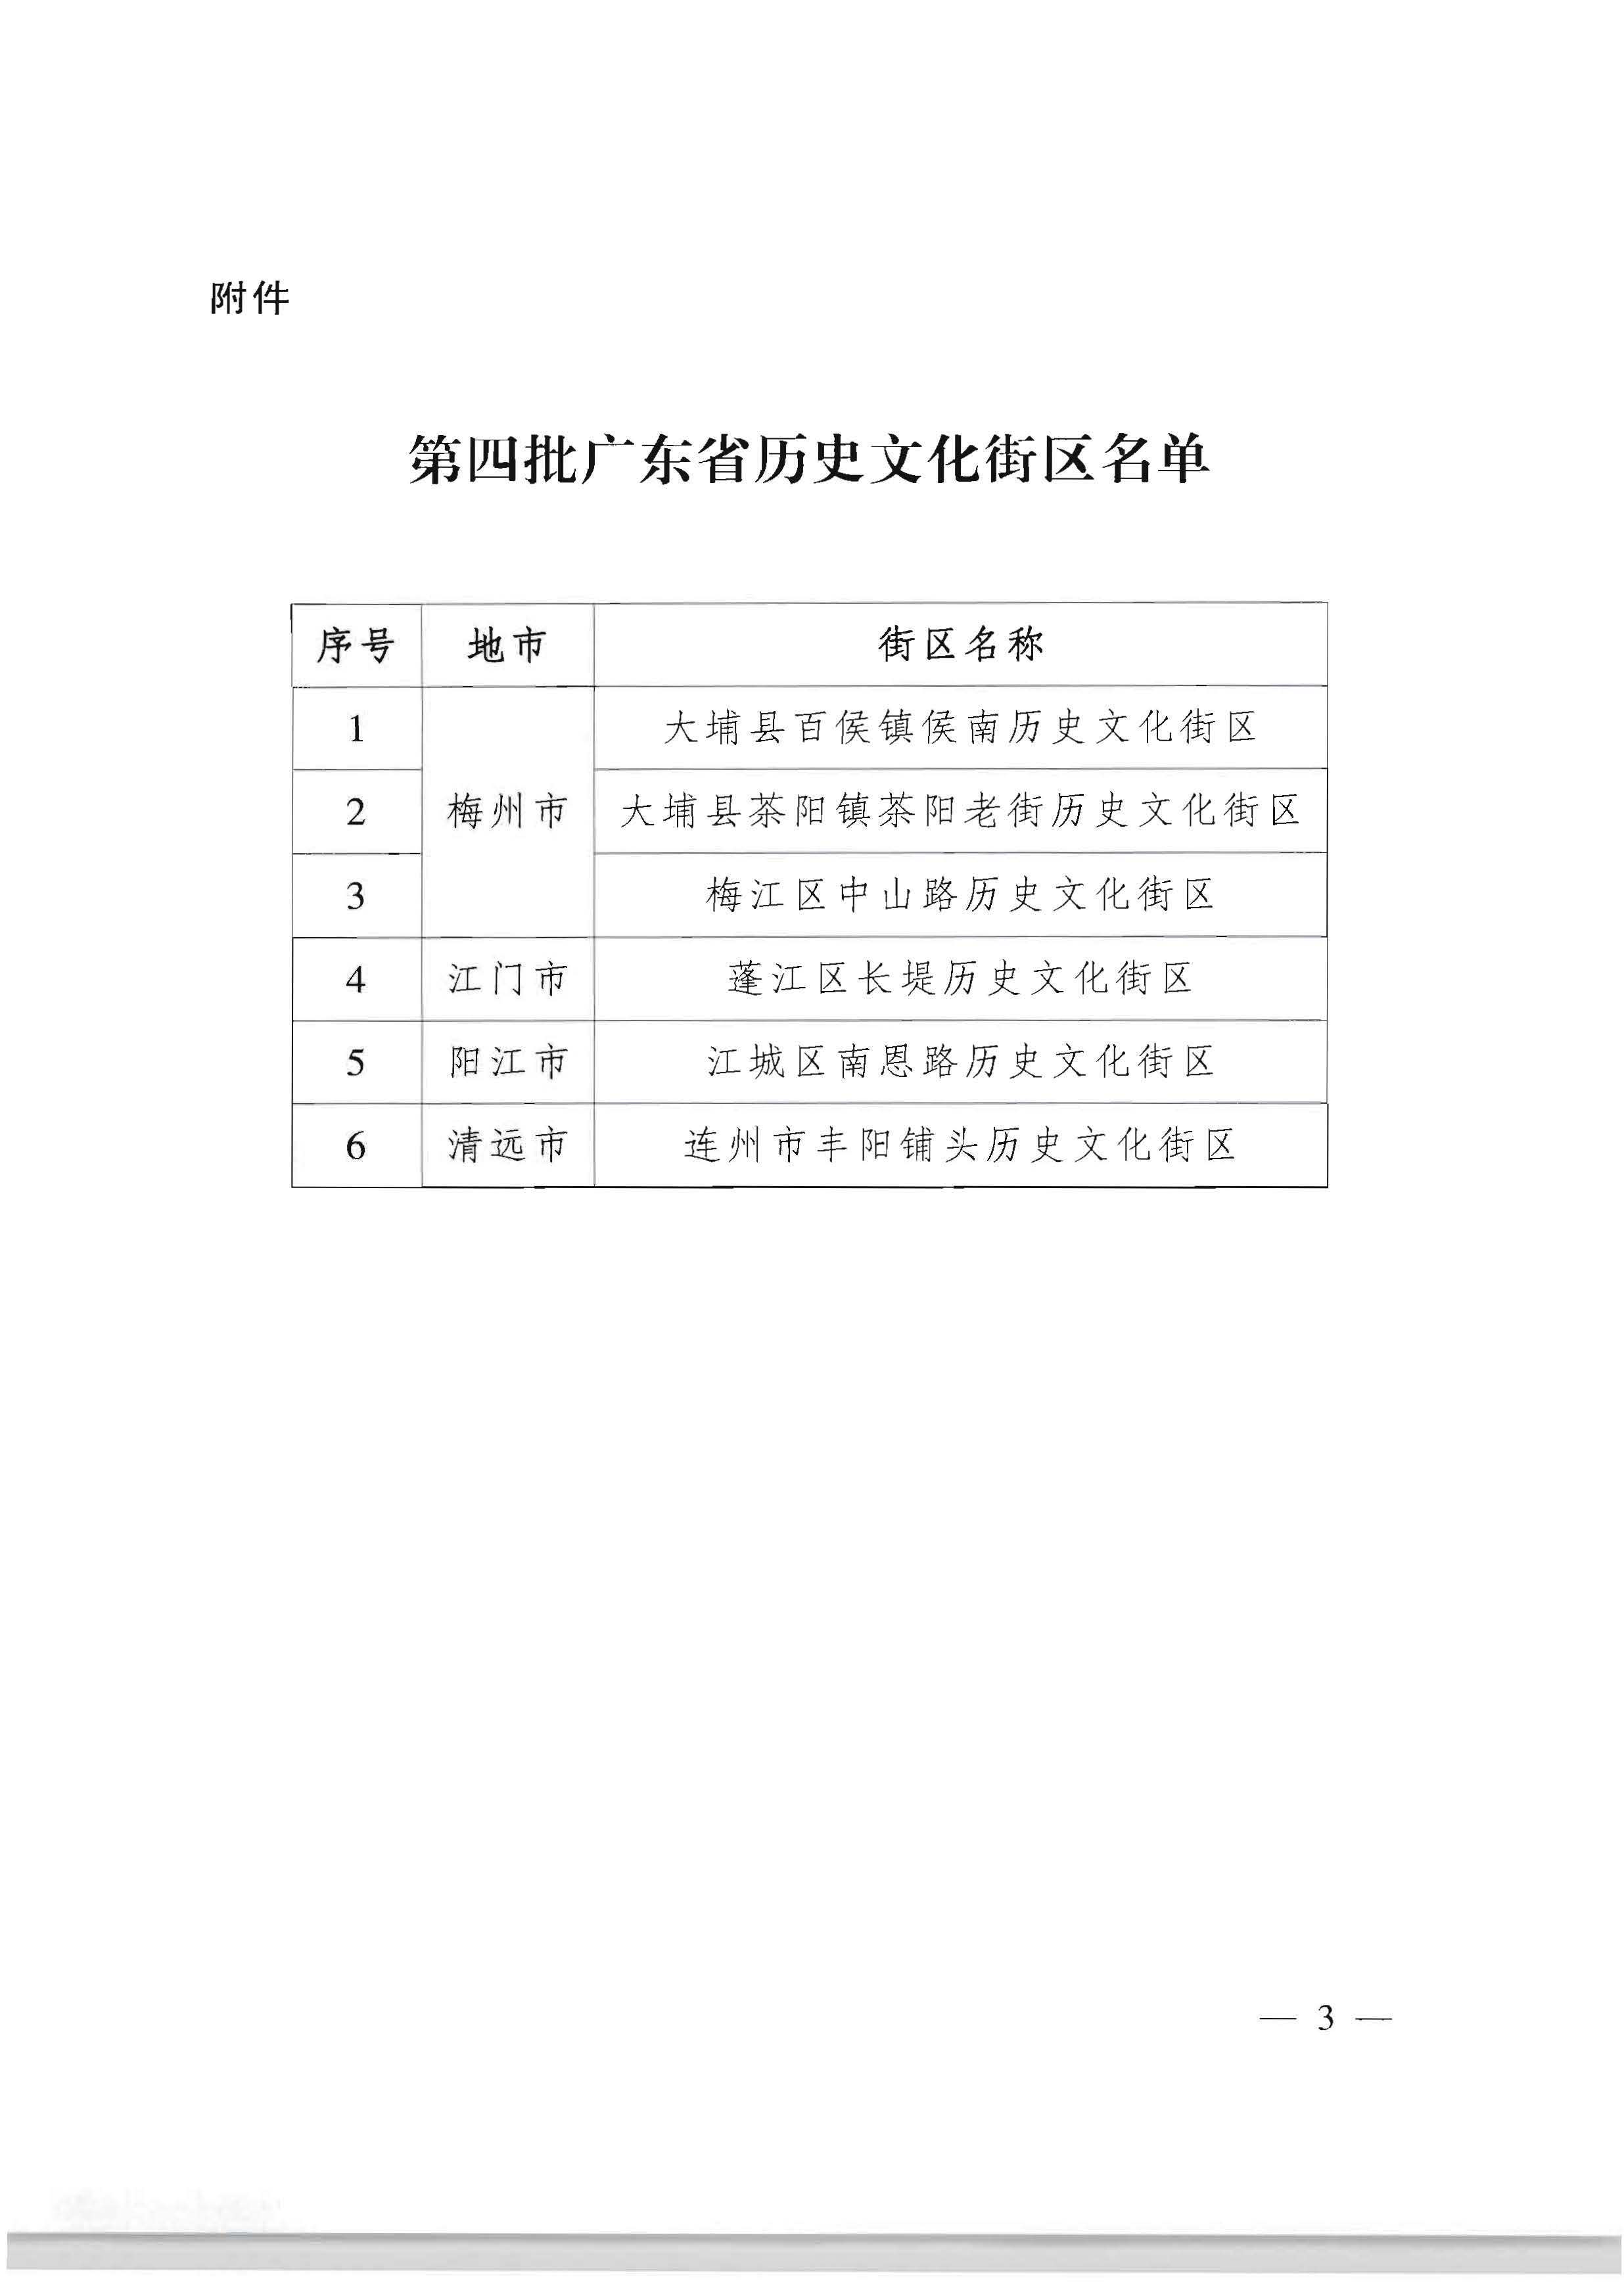 广东省人民政府关于公布第四批广东省历史文化街区名单的通知_页面_3.jpg